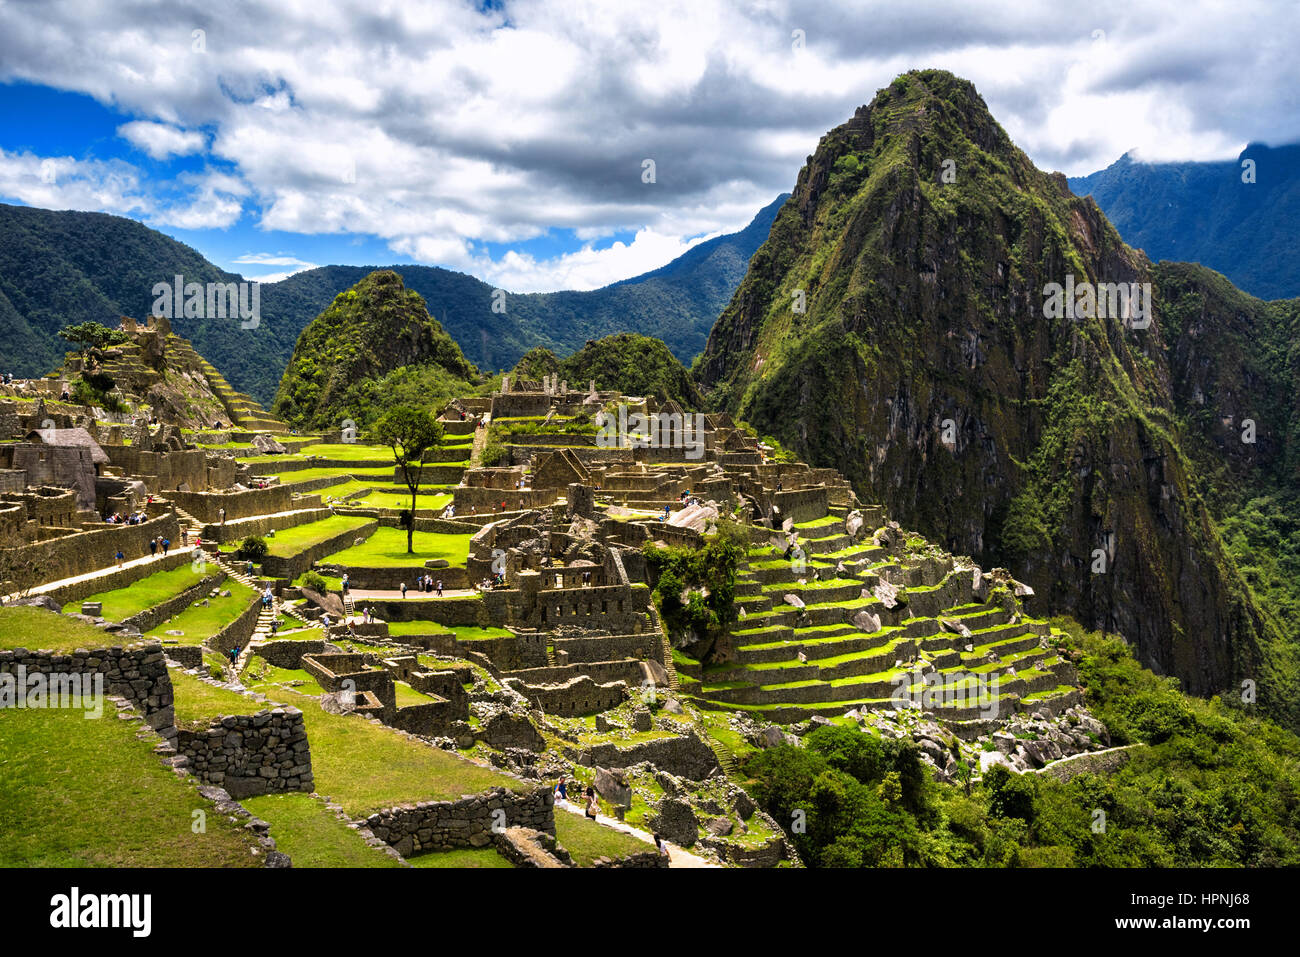 Blick auf die verlorene Inka-Stadt Machu Picchu in der Nähe von Cusco, Peru. Machu Picchu ist eine peruanische historische Heiligtum. Im Vordergrund sind Menschen zu sehen. Stockfoto